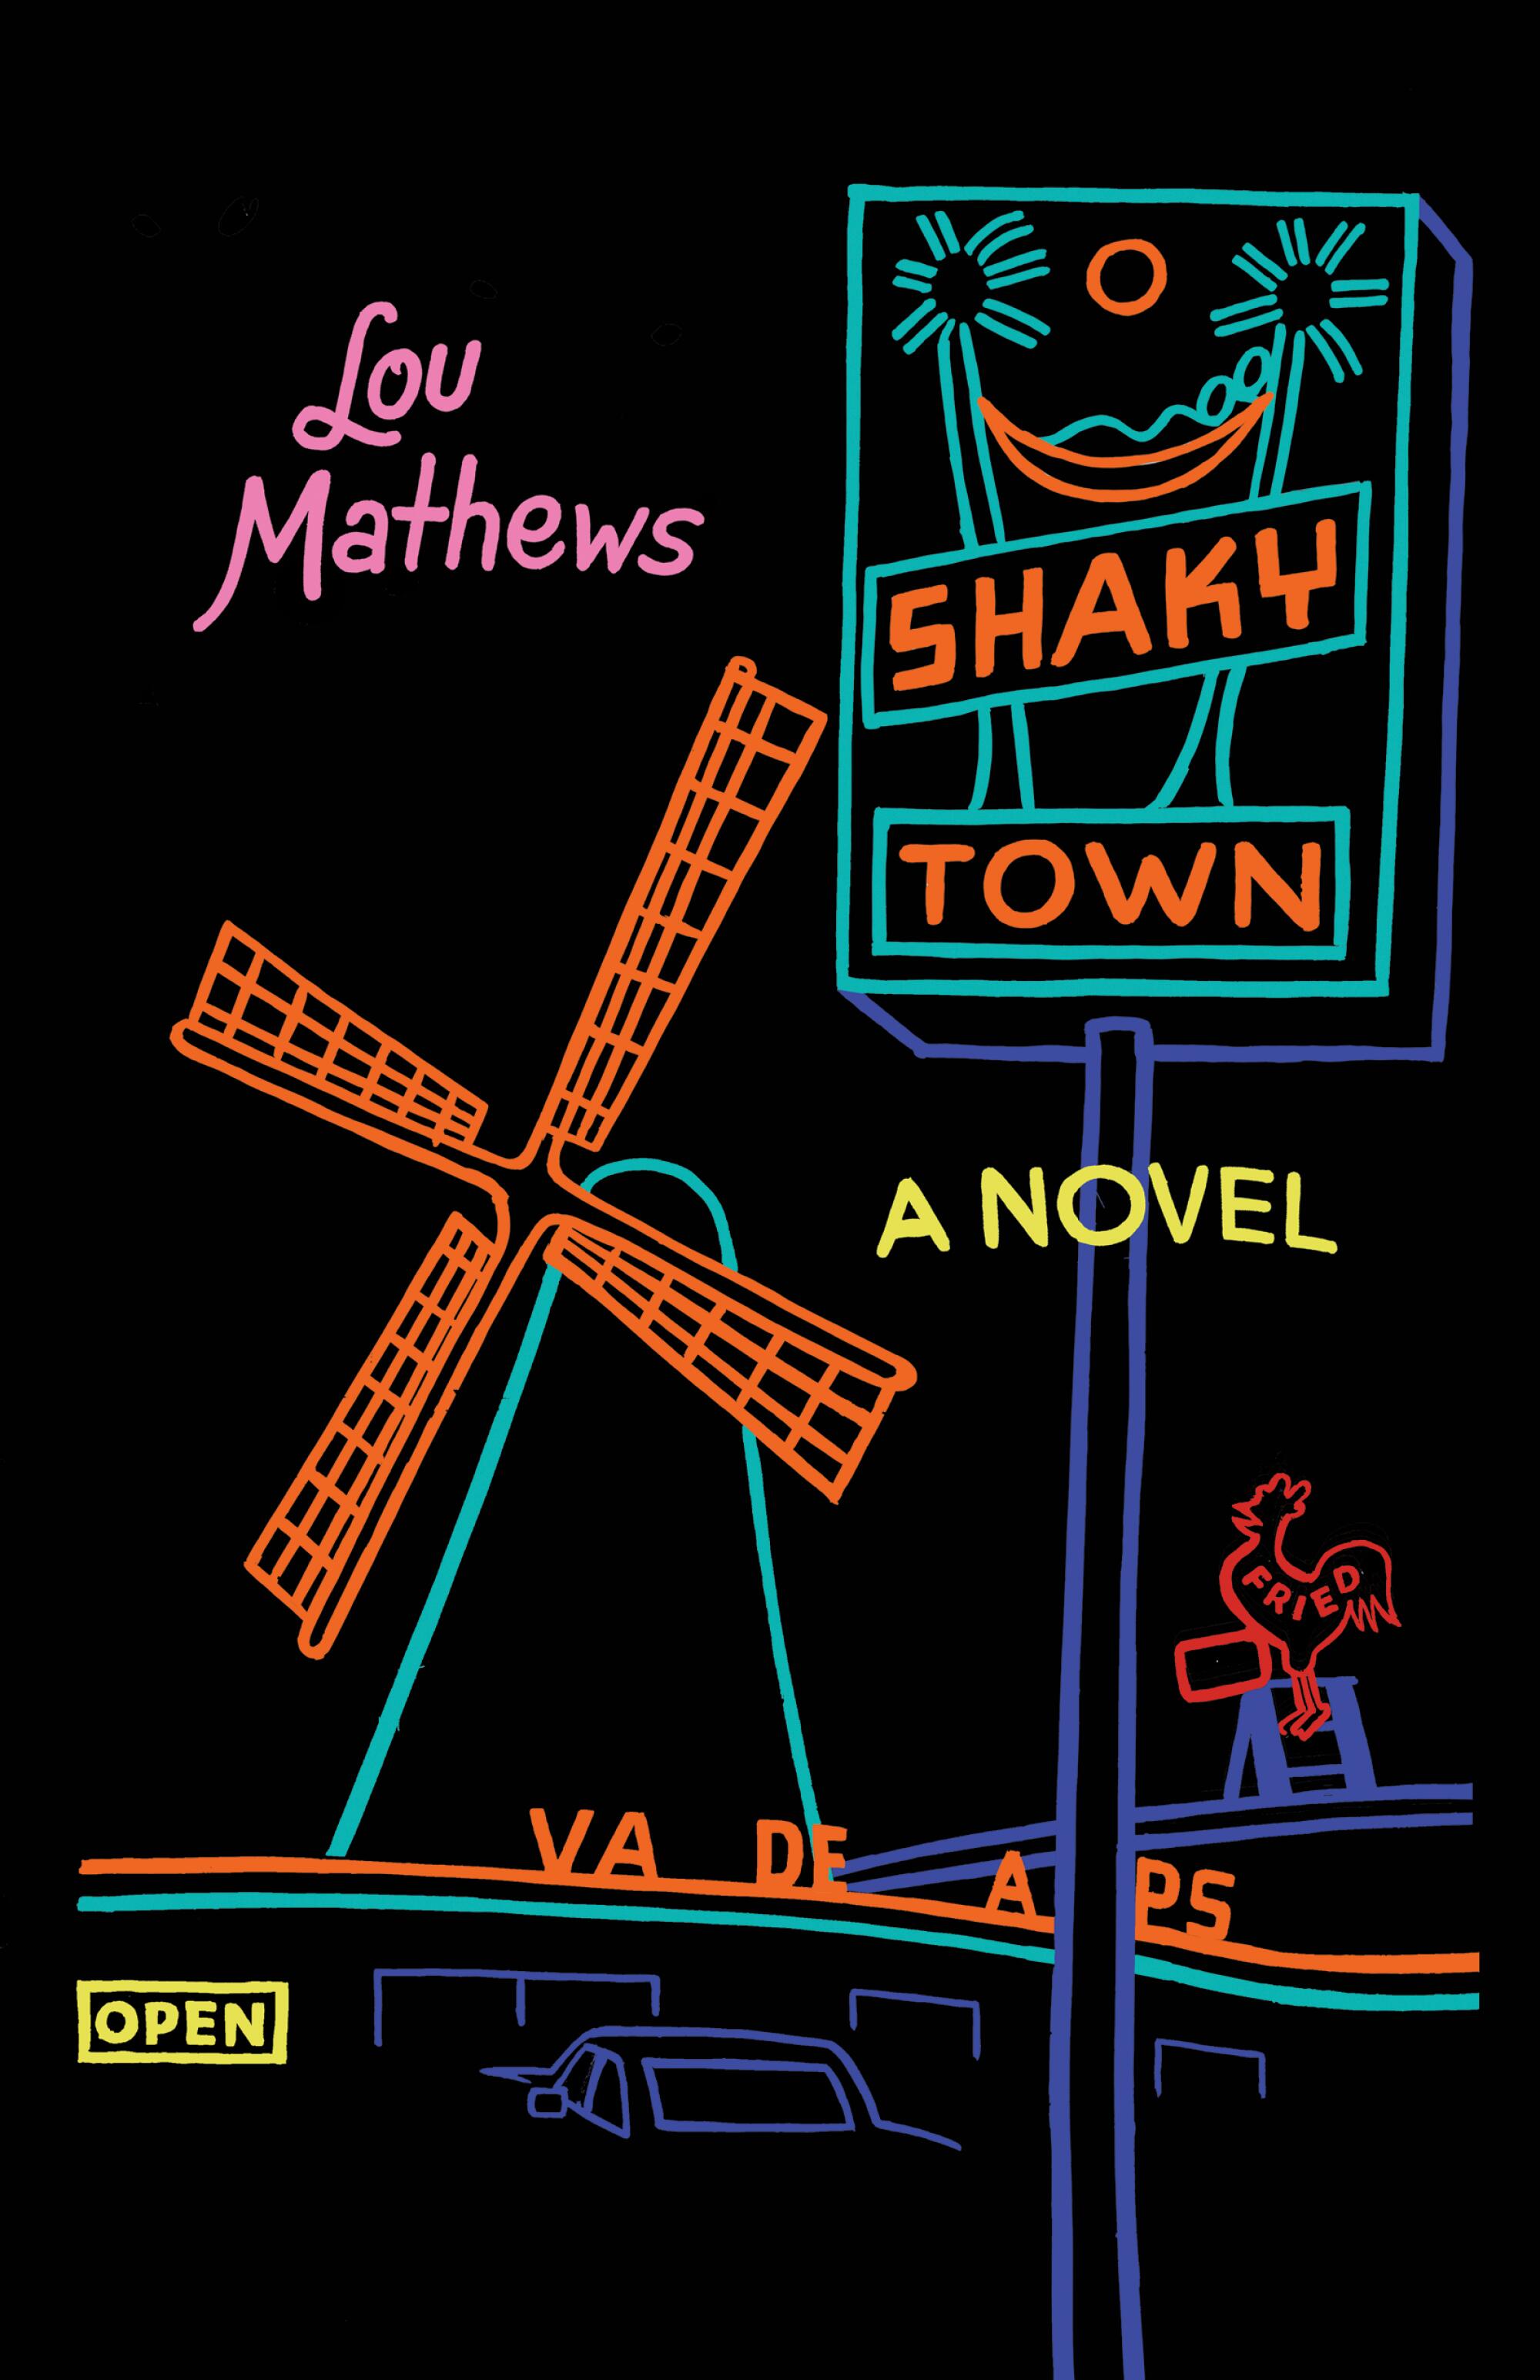 "Shaky Town," by Lou Mathews